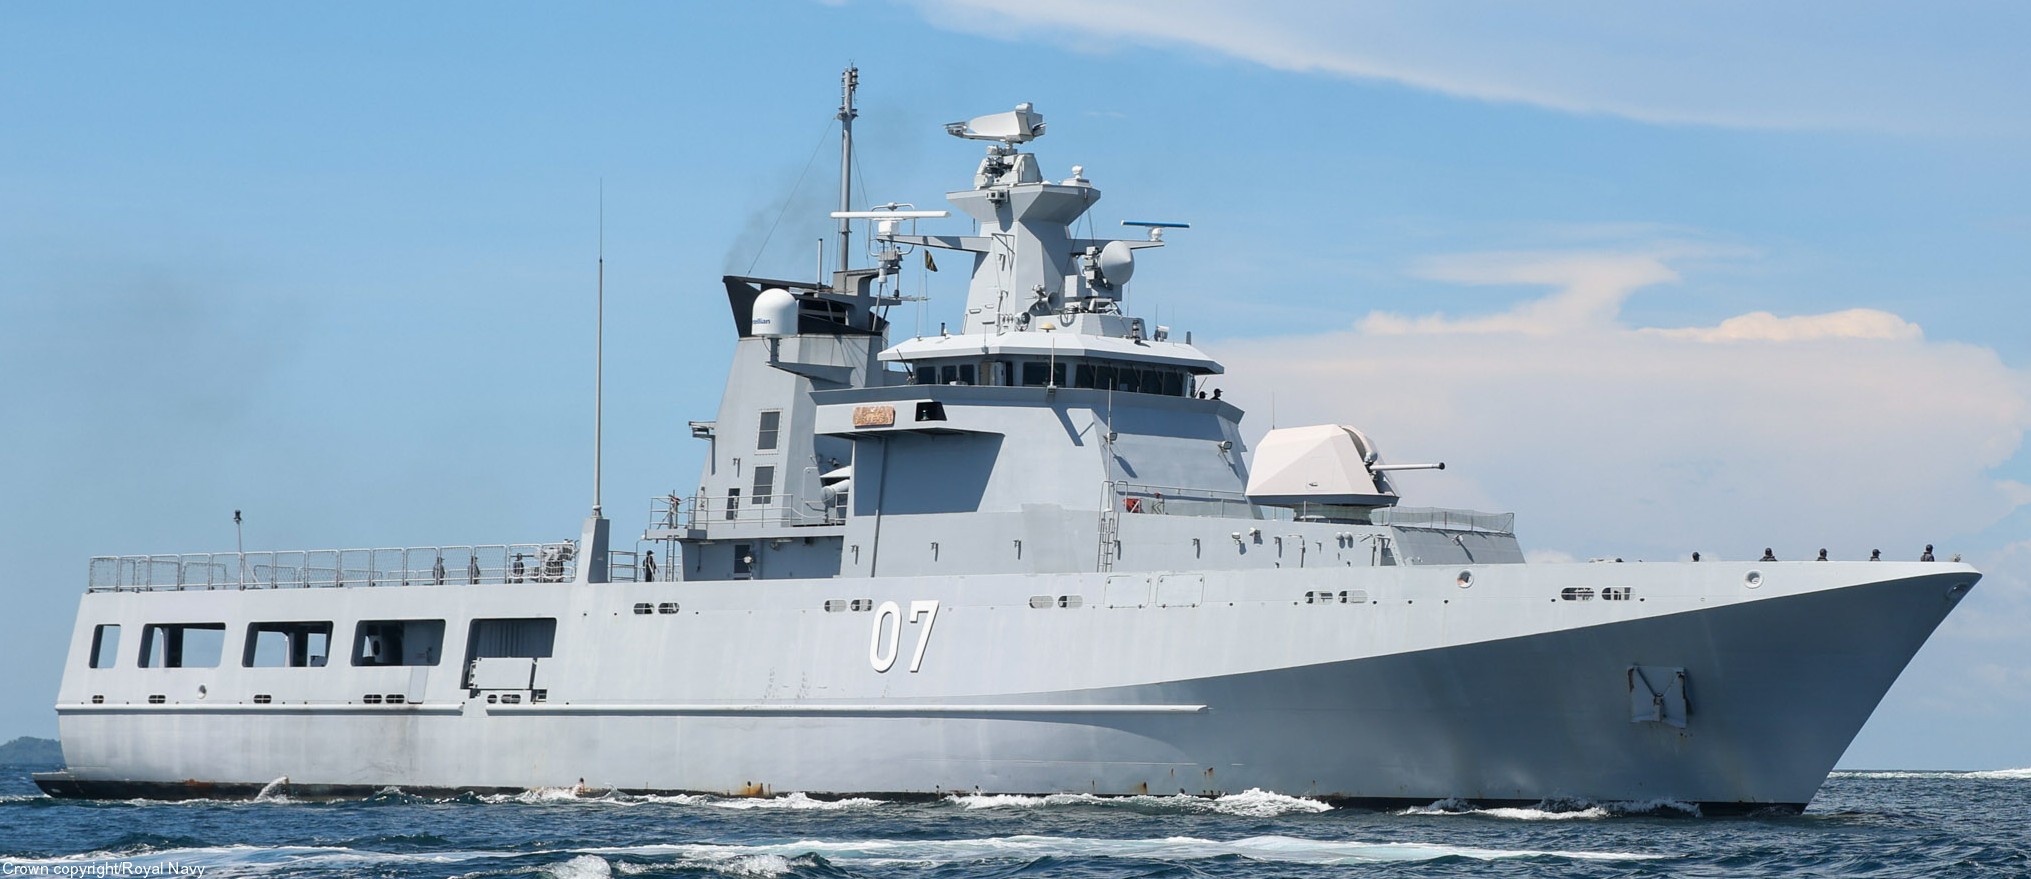 opv 07 kdb darulehsan offshore patrol vessel darussalem class royal brunei navy 02